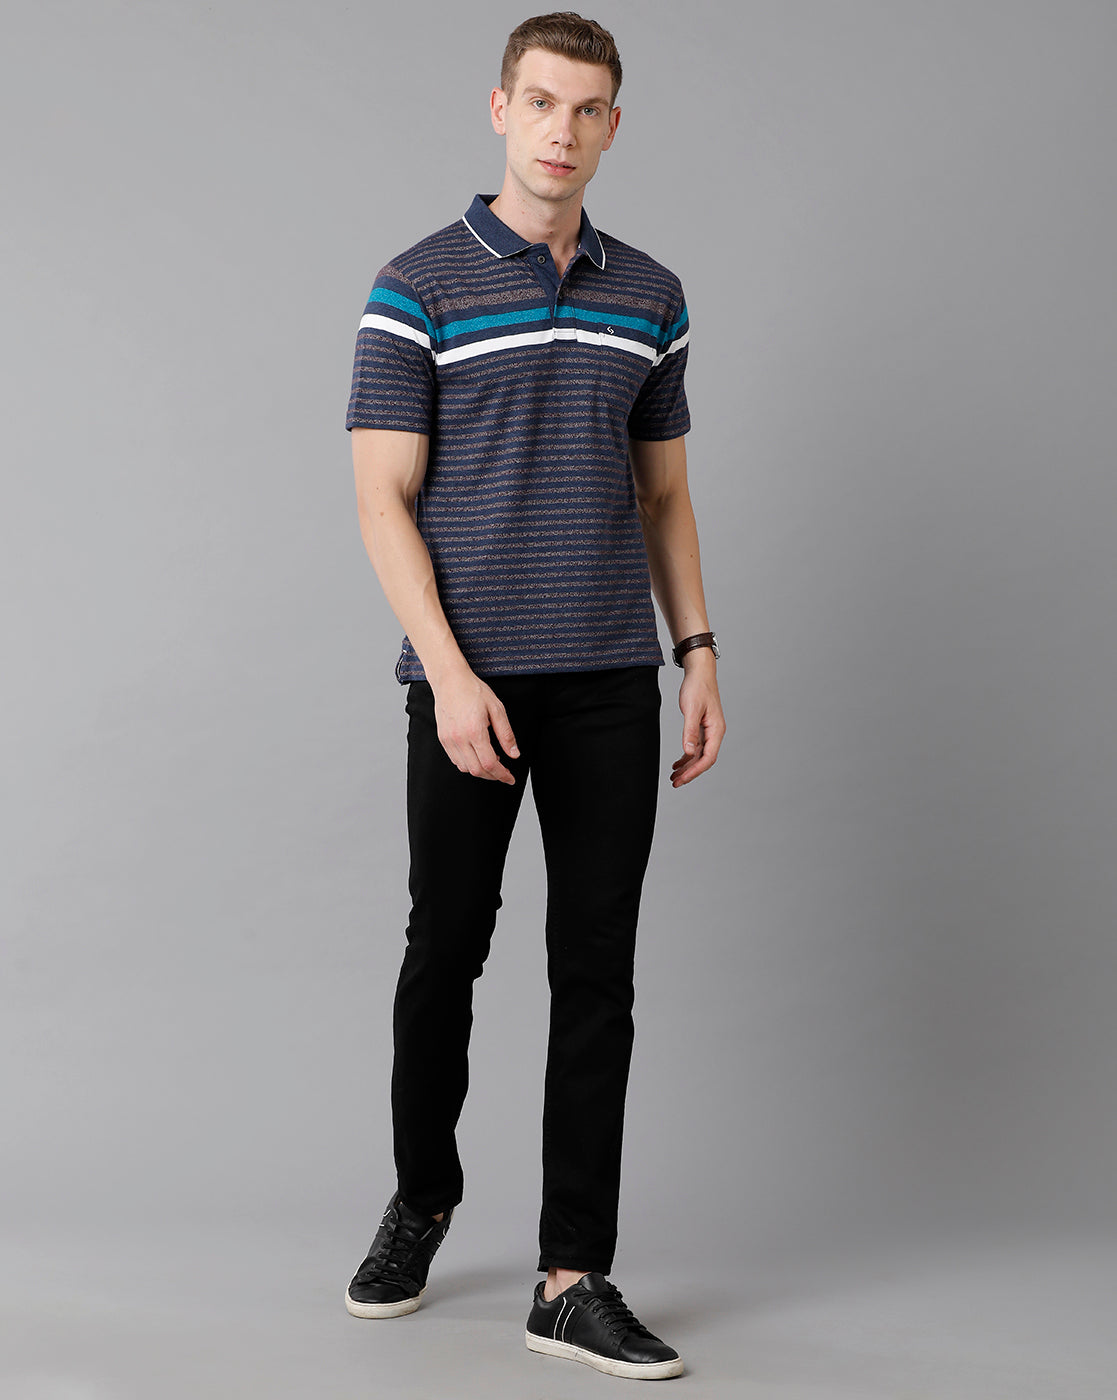 Classic Polo Men's Cotton Blend Striped Authentic Fit Multicolor T-Shirt | Mel - 218 A